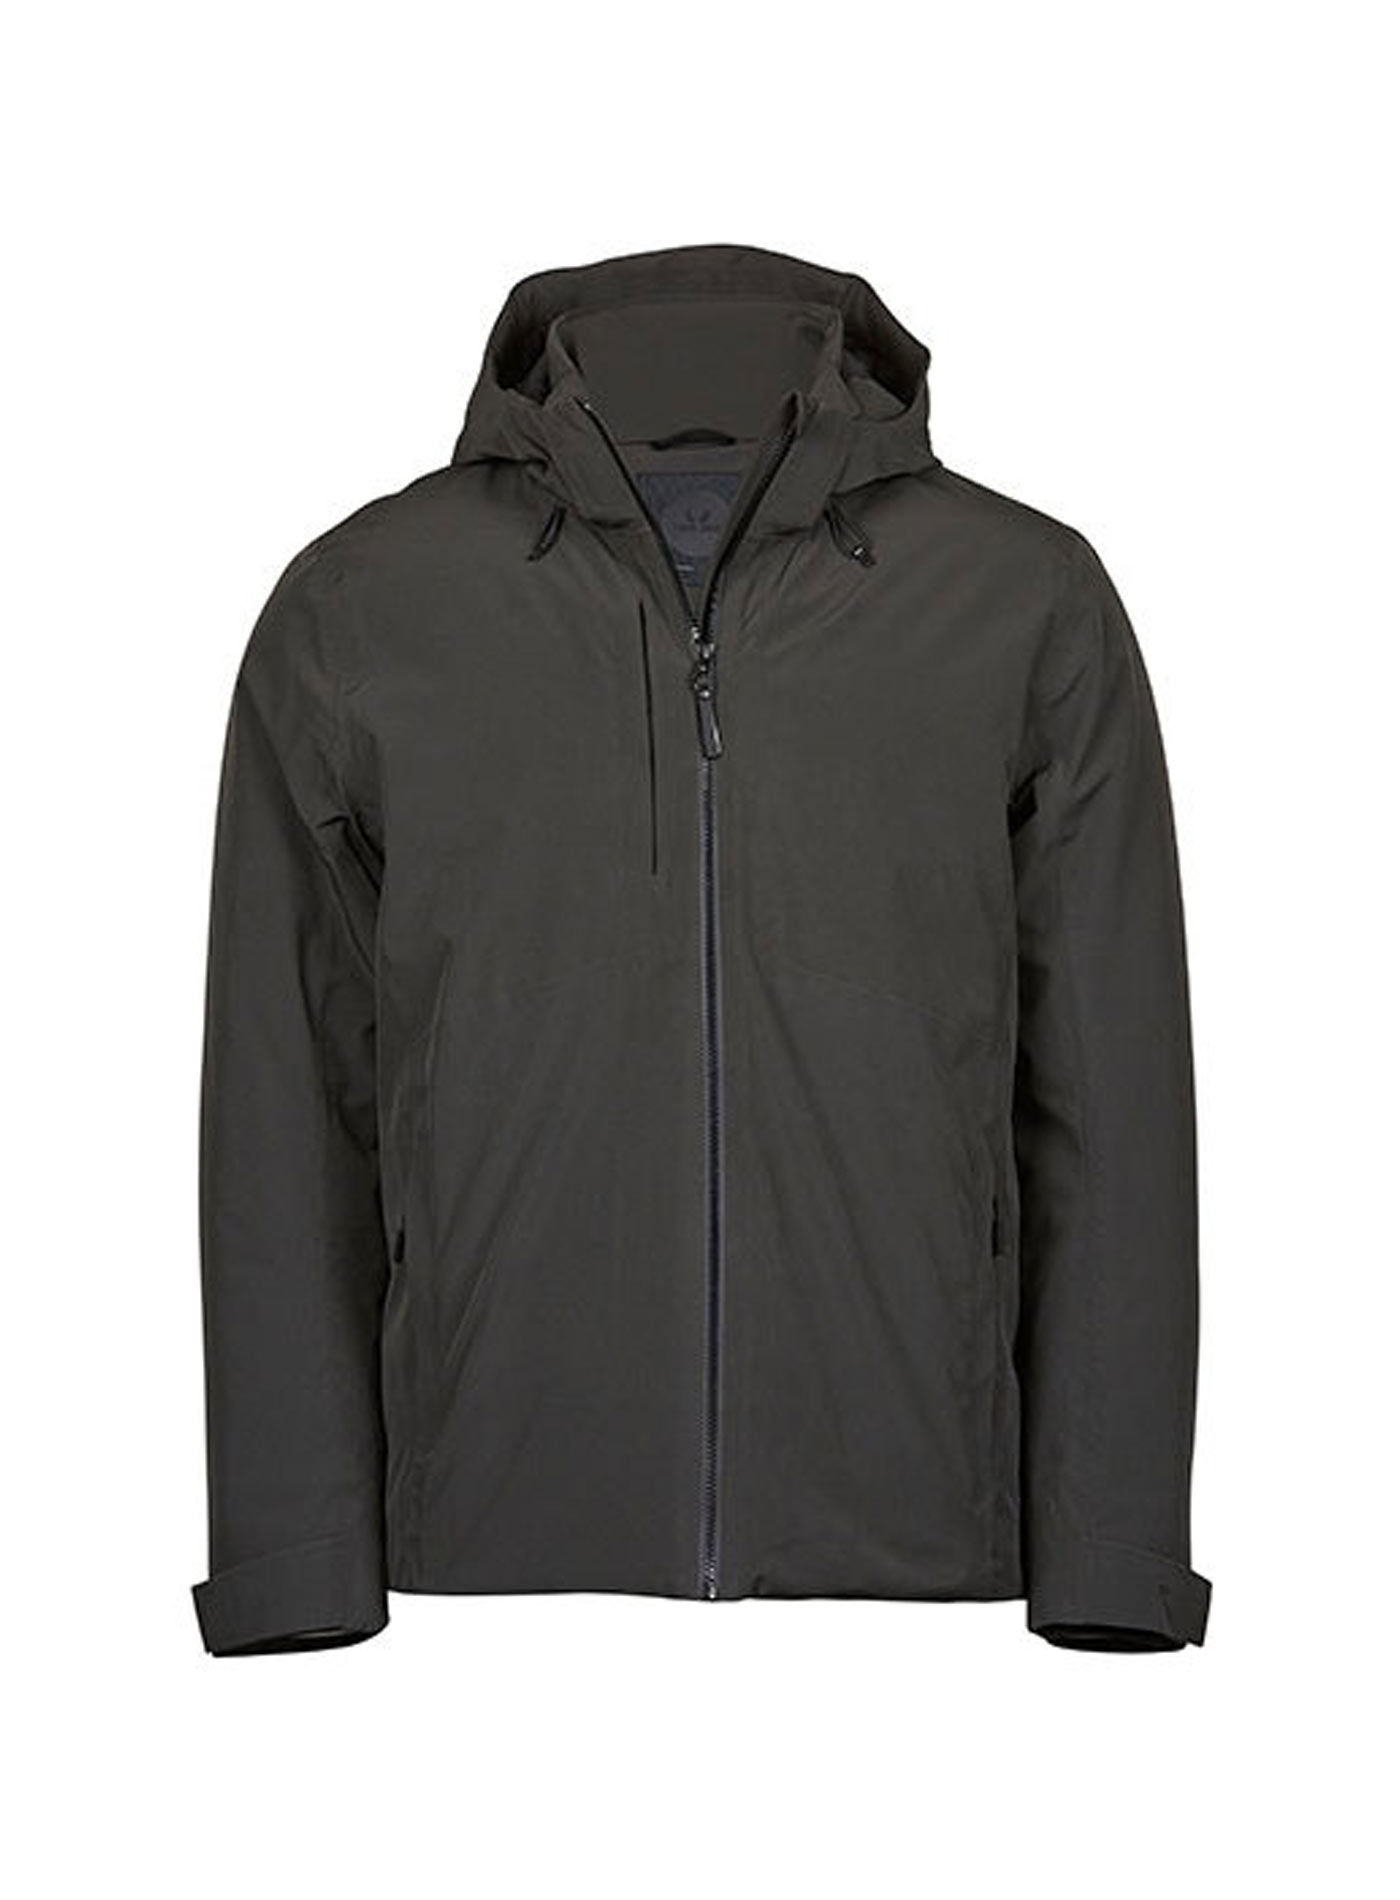 Pánská nepromokavá zimní bunda s kapucí Tee Jays - Tmavě šedá XL